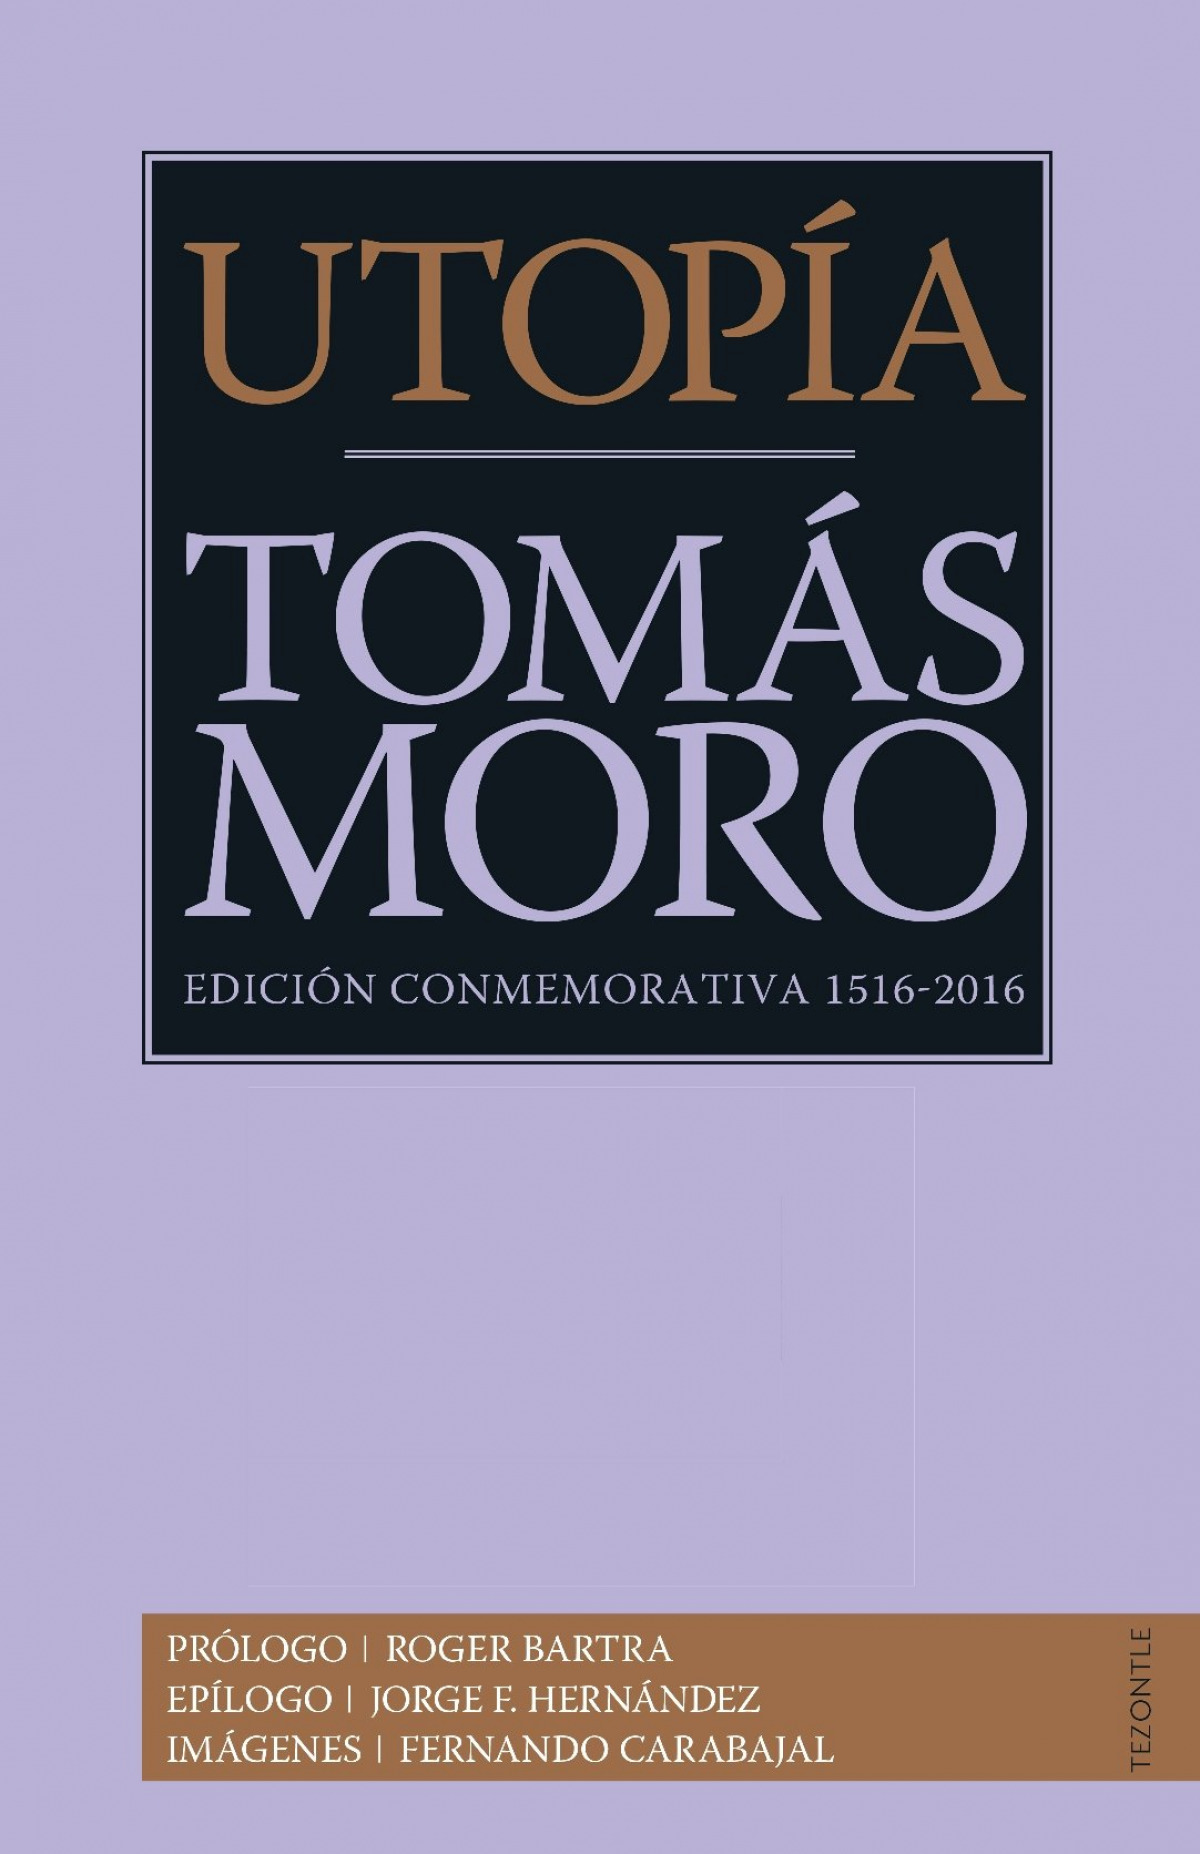 Utopía - Moro, Tomás